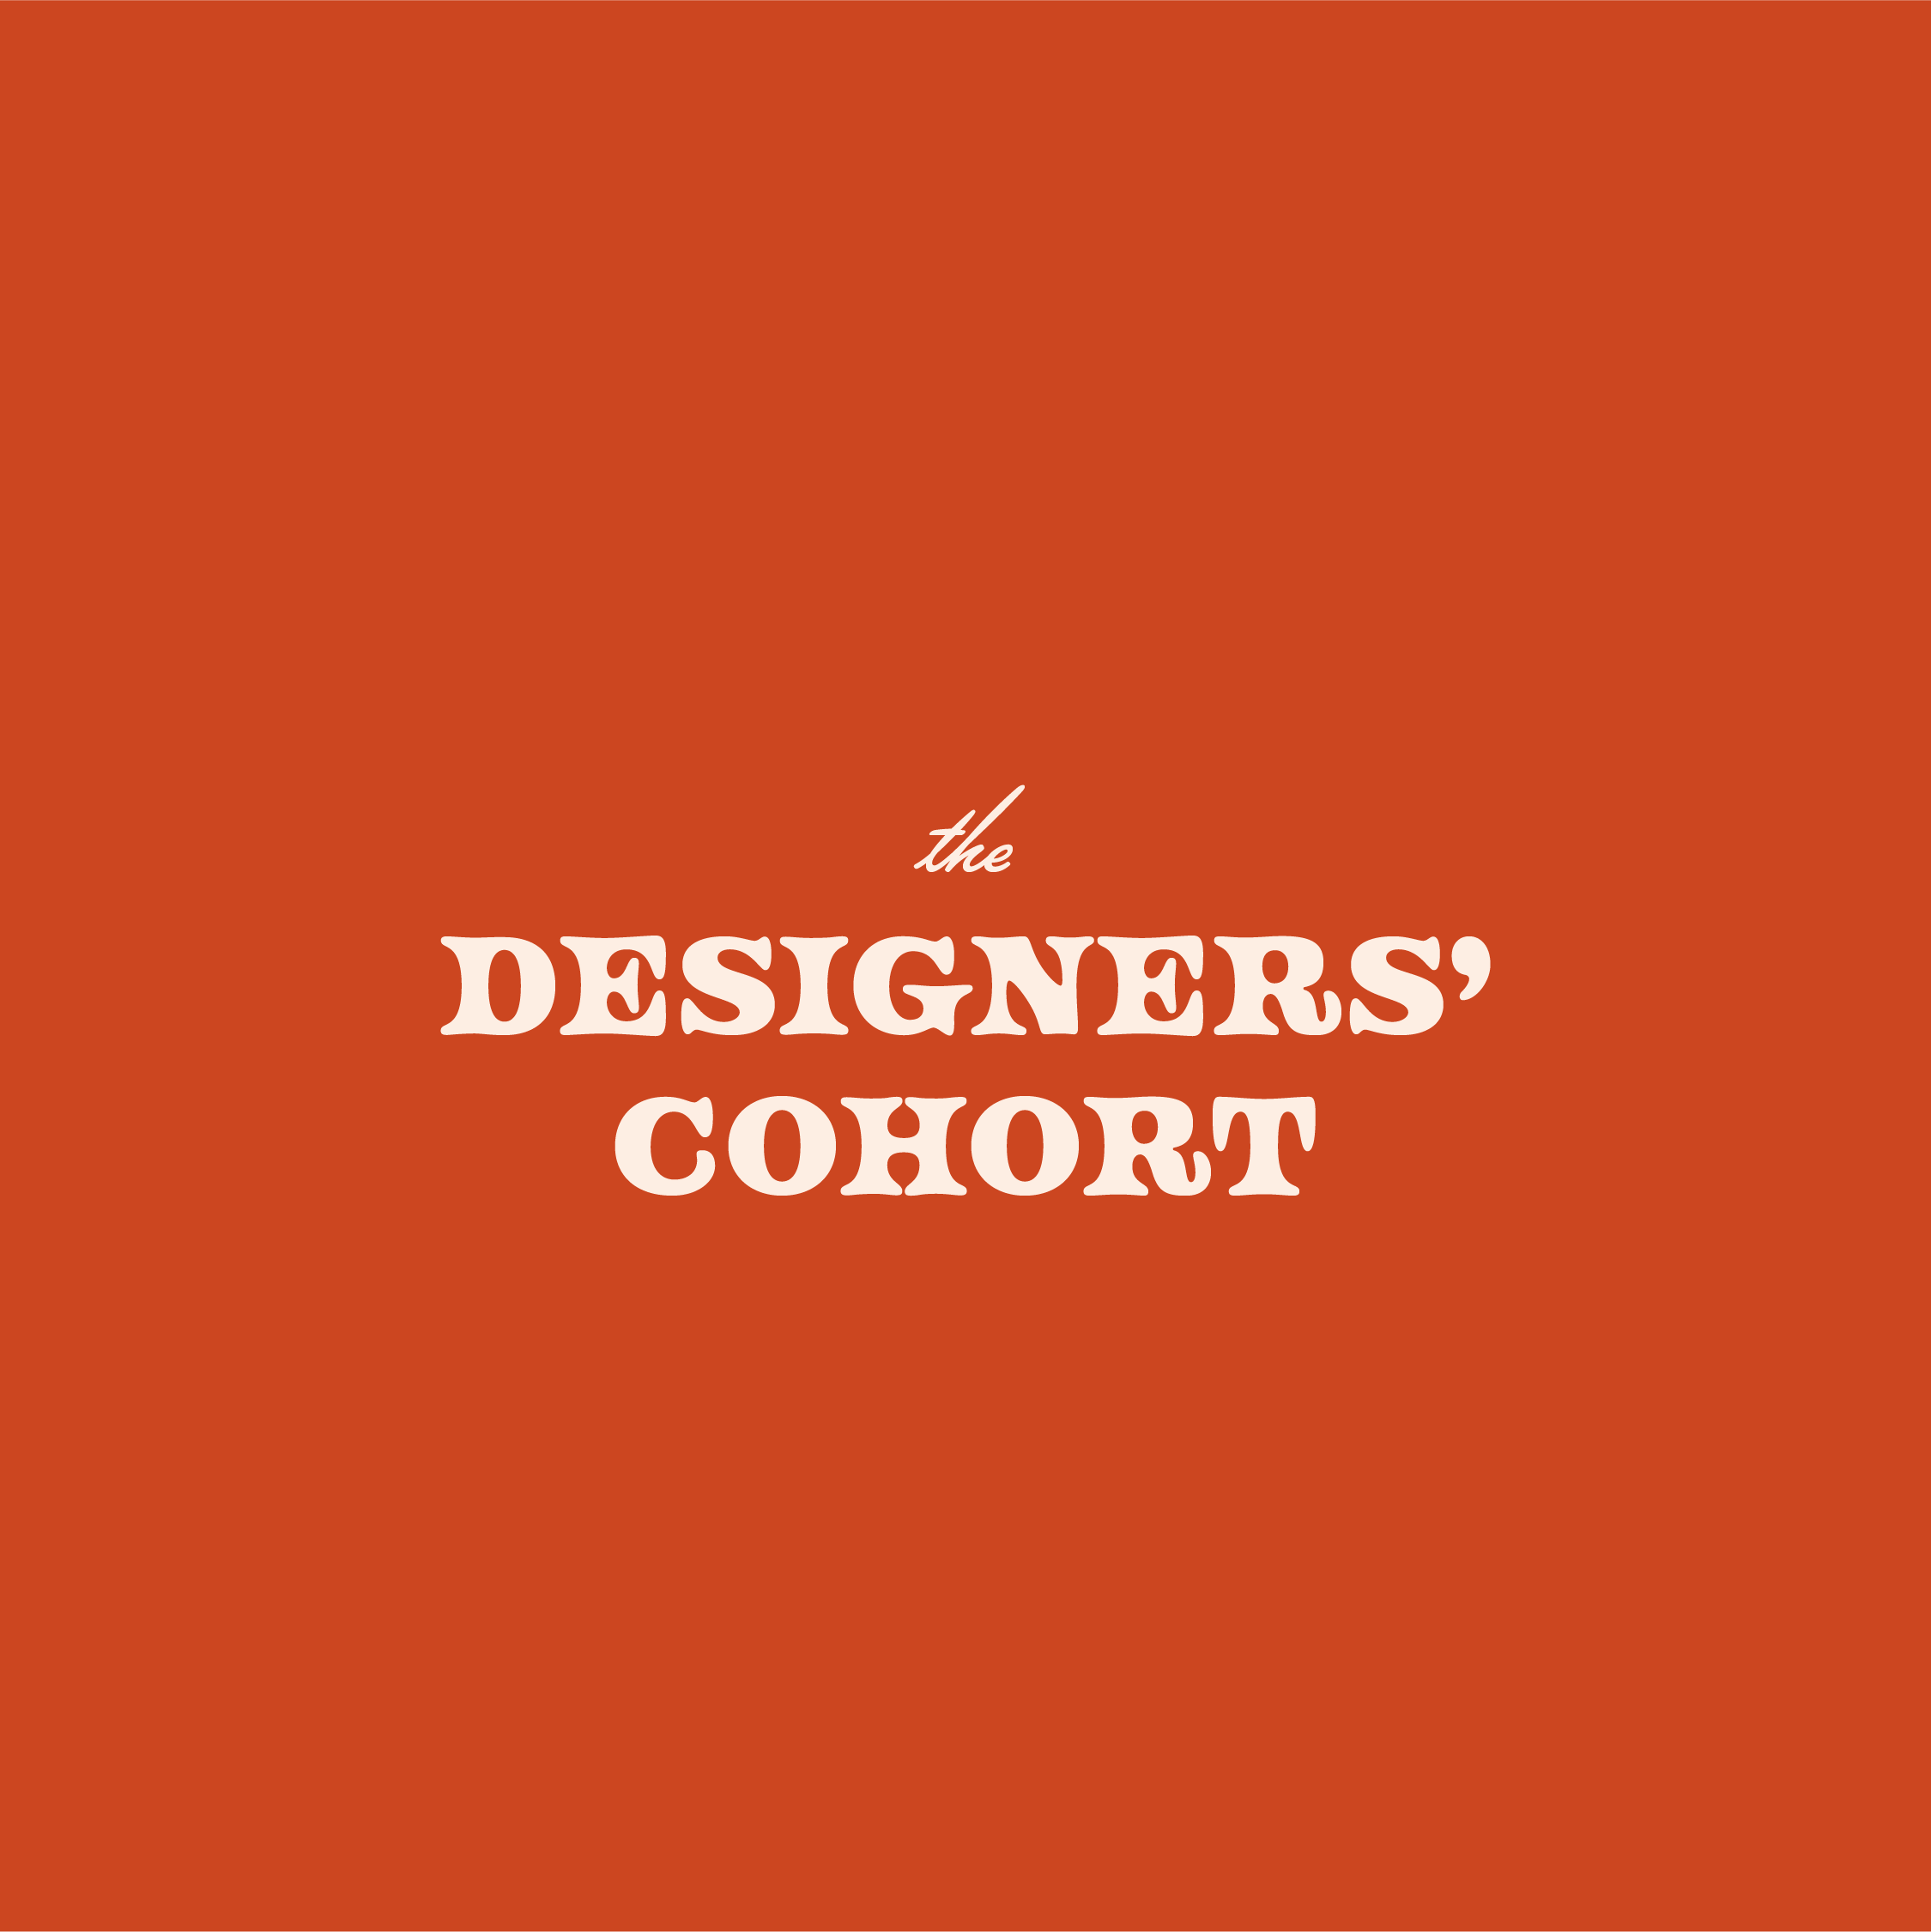 The Designers' Cohort